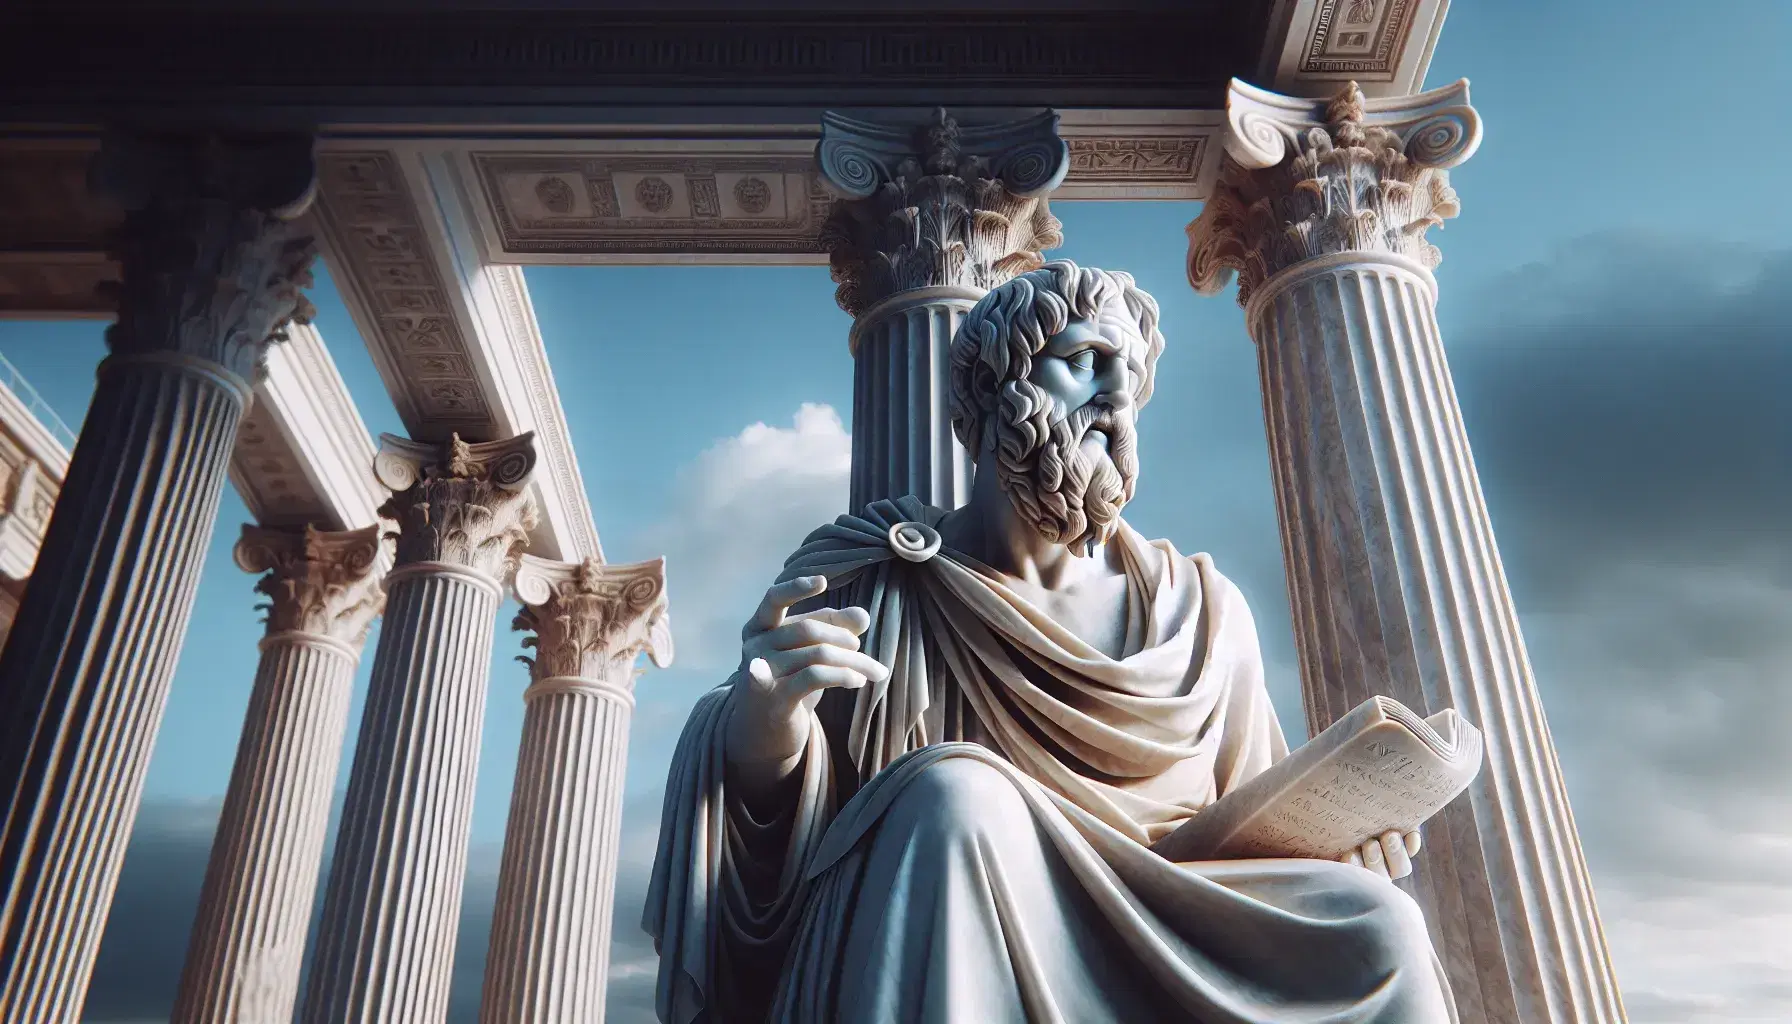 Estatua de mármol blanco de filósofo antiguo con pergamino en mano y columna de templo griego clásico al fondo bajo cielo azul.